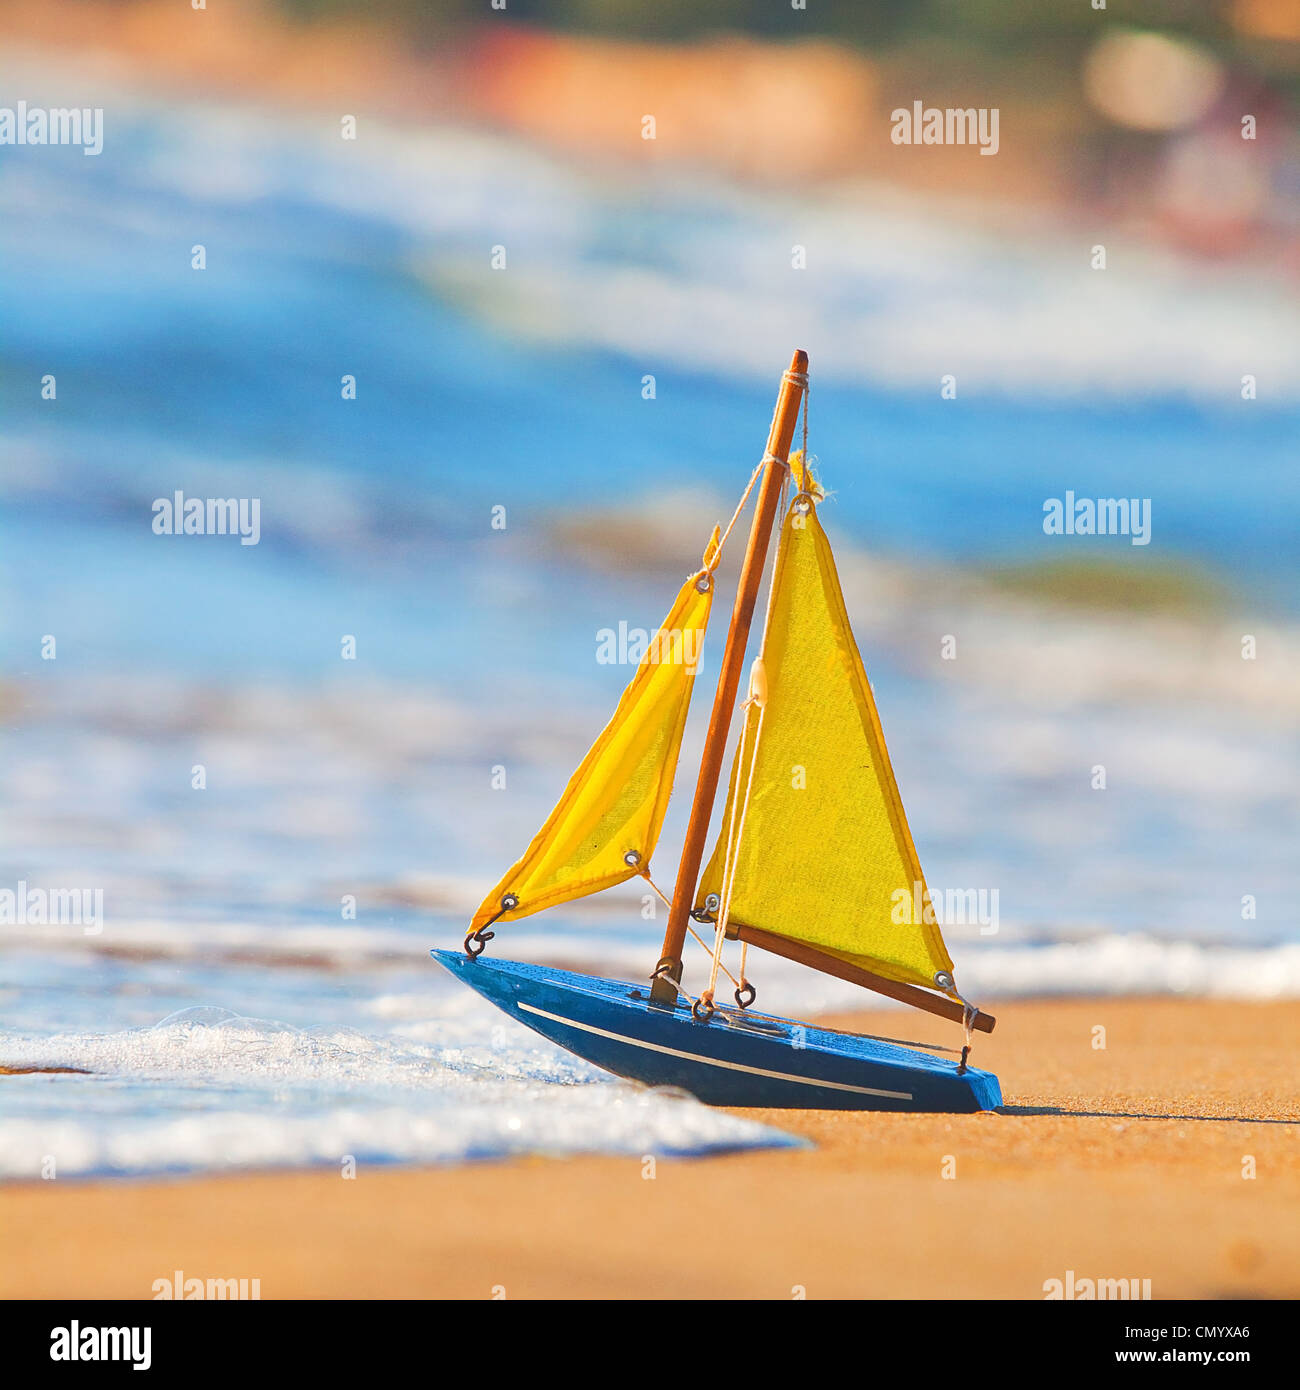 La piccola barca giocattolo sorge sulla spiaggia sabbiosa Foto Stock